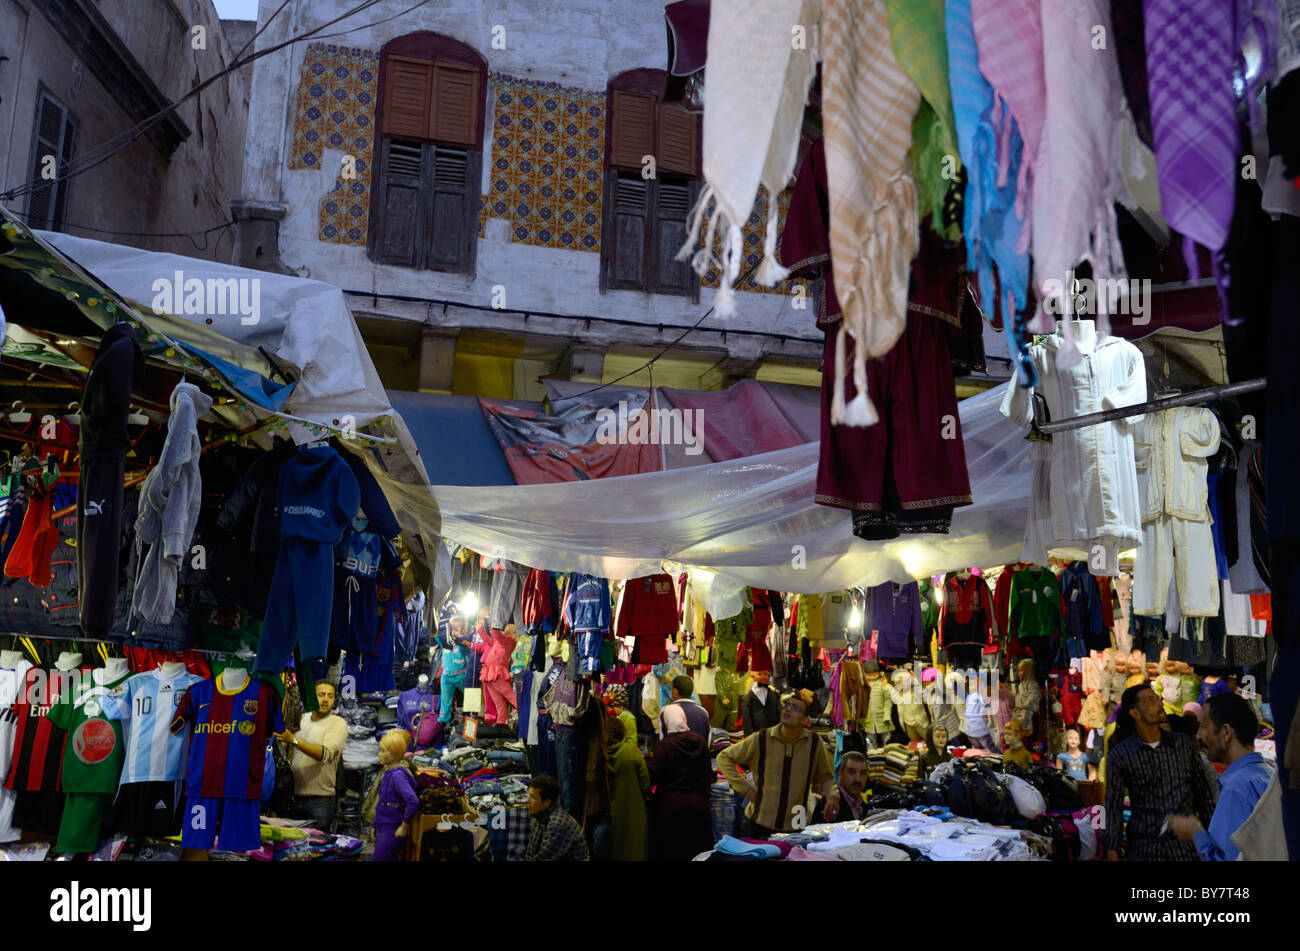 Labyrinthe encombré de vêtements et commerçants dans l'ancienne Médina de Casablanca Maroc Afrique du Nord Banque D'Images